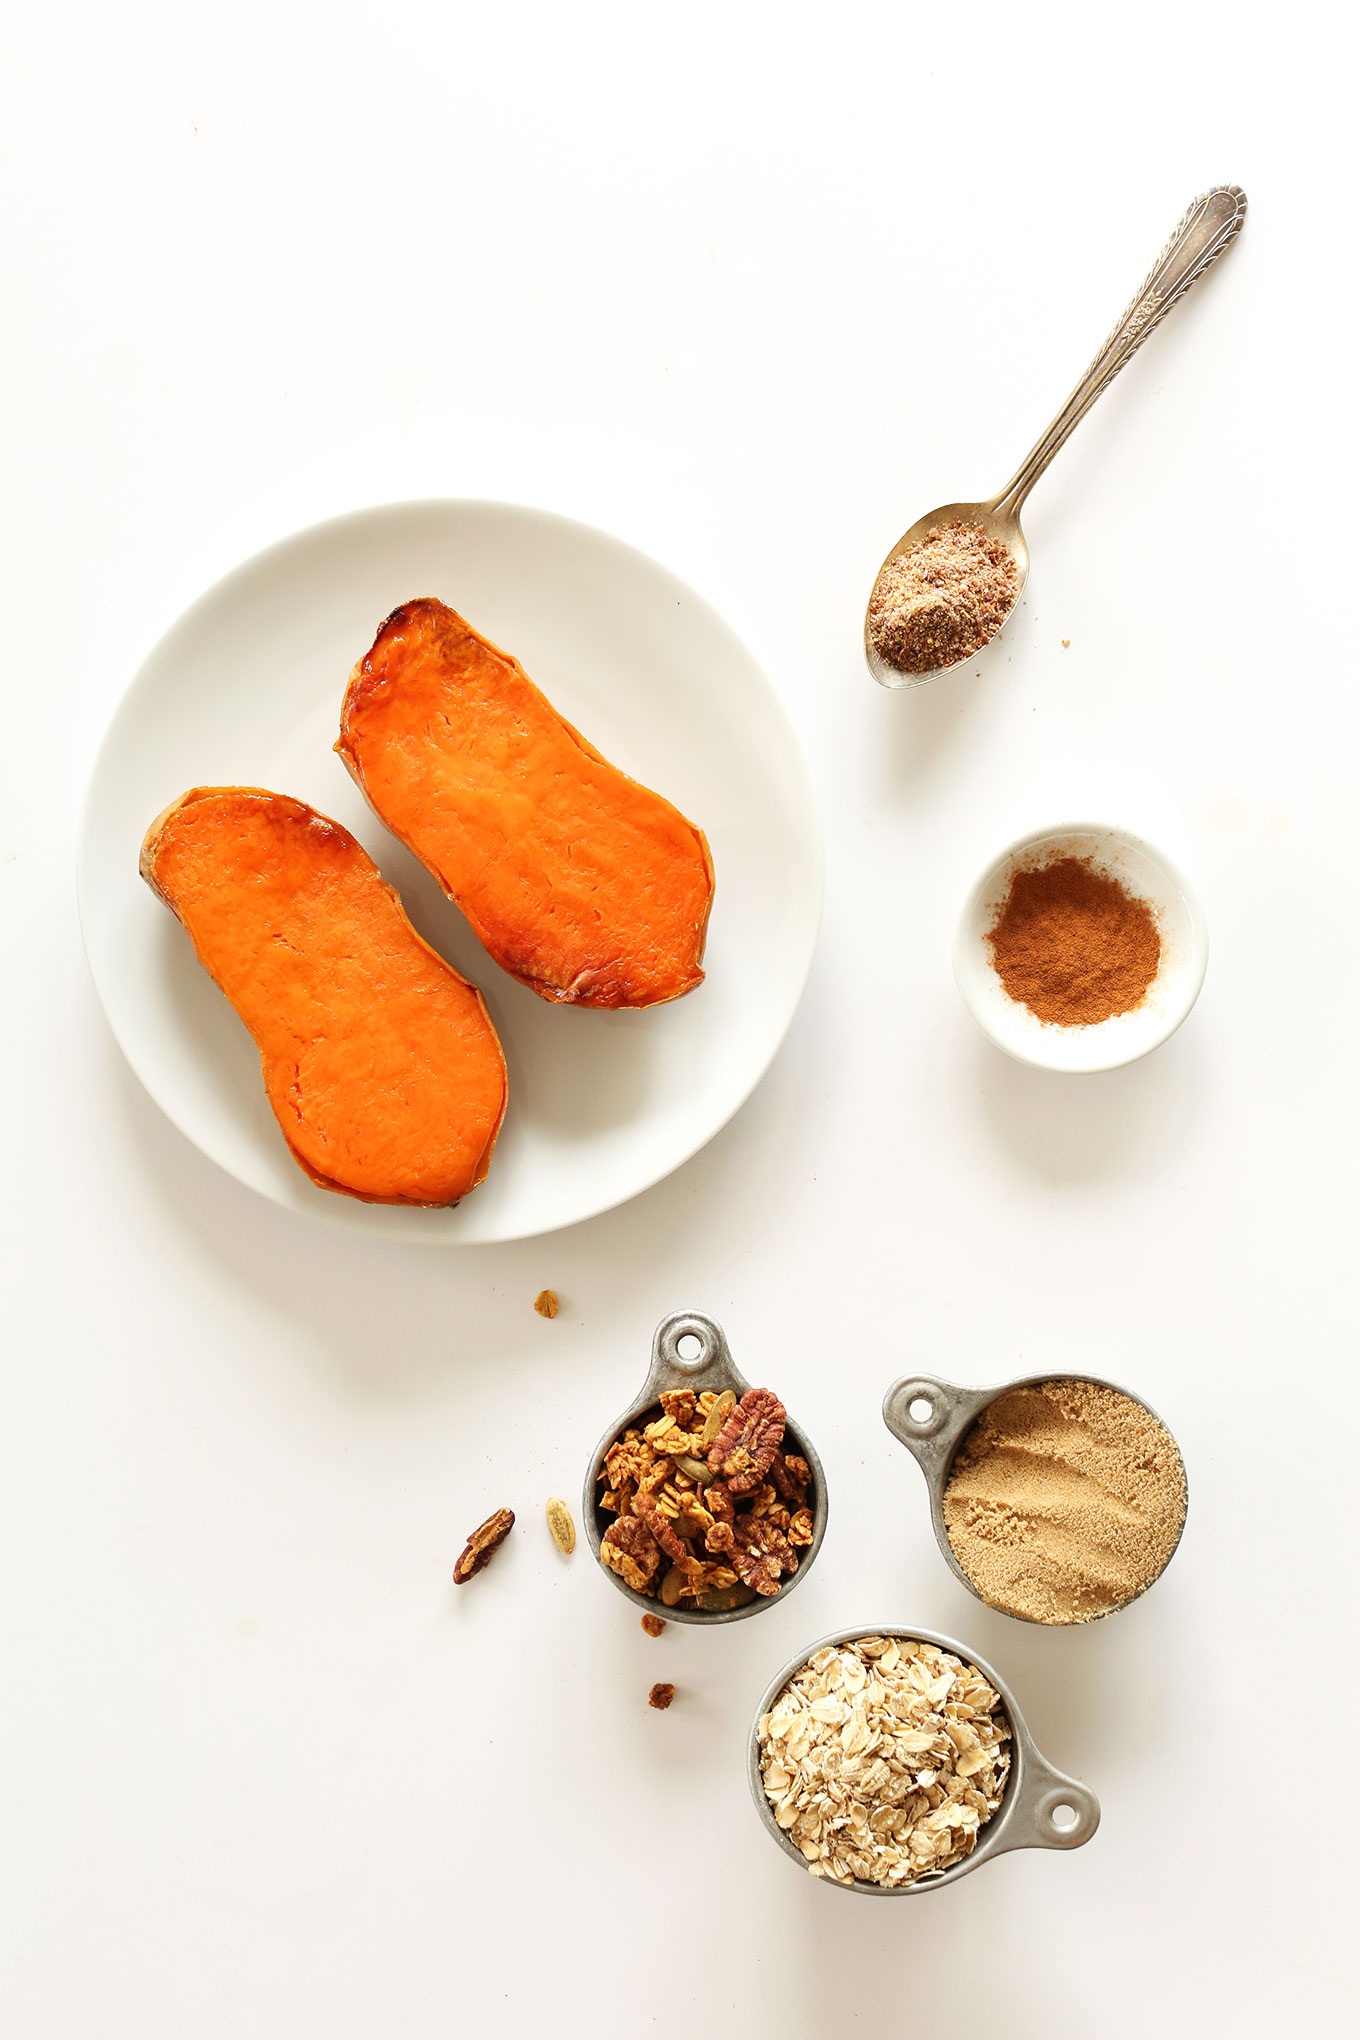 Ingredients for making our healthy Sweet Potato Pie Oats breakfast recipe